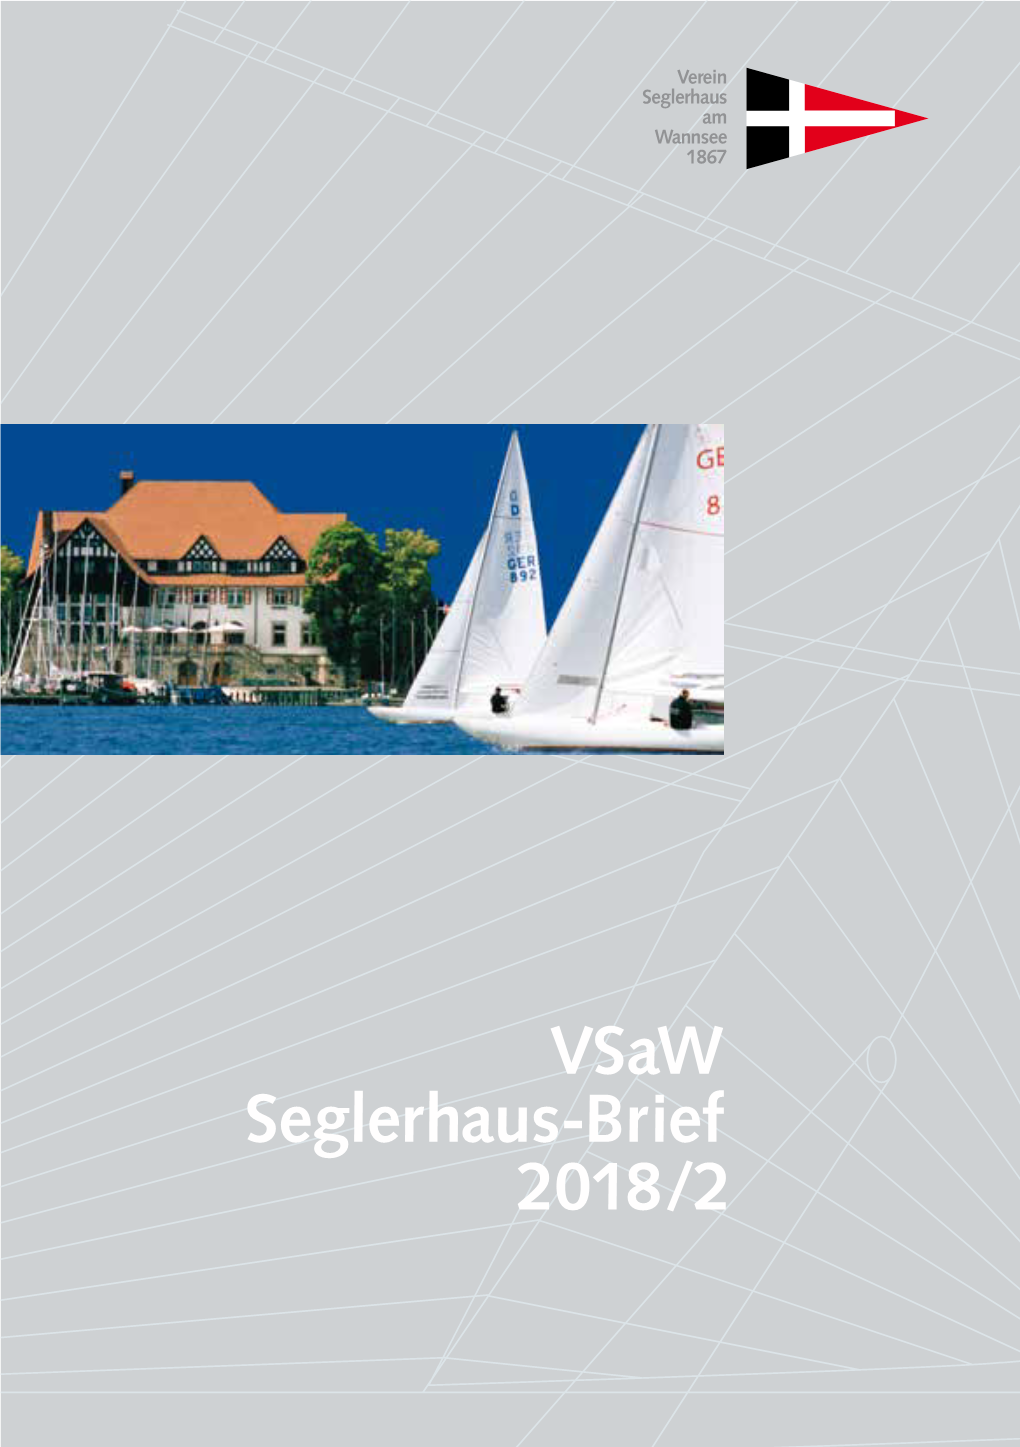 Vsaw Seglerhaus-Brief 2018/2